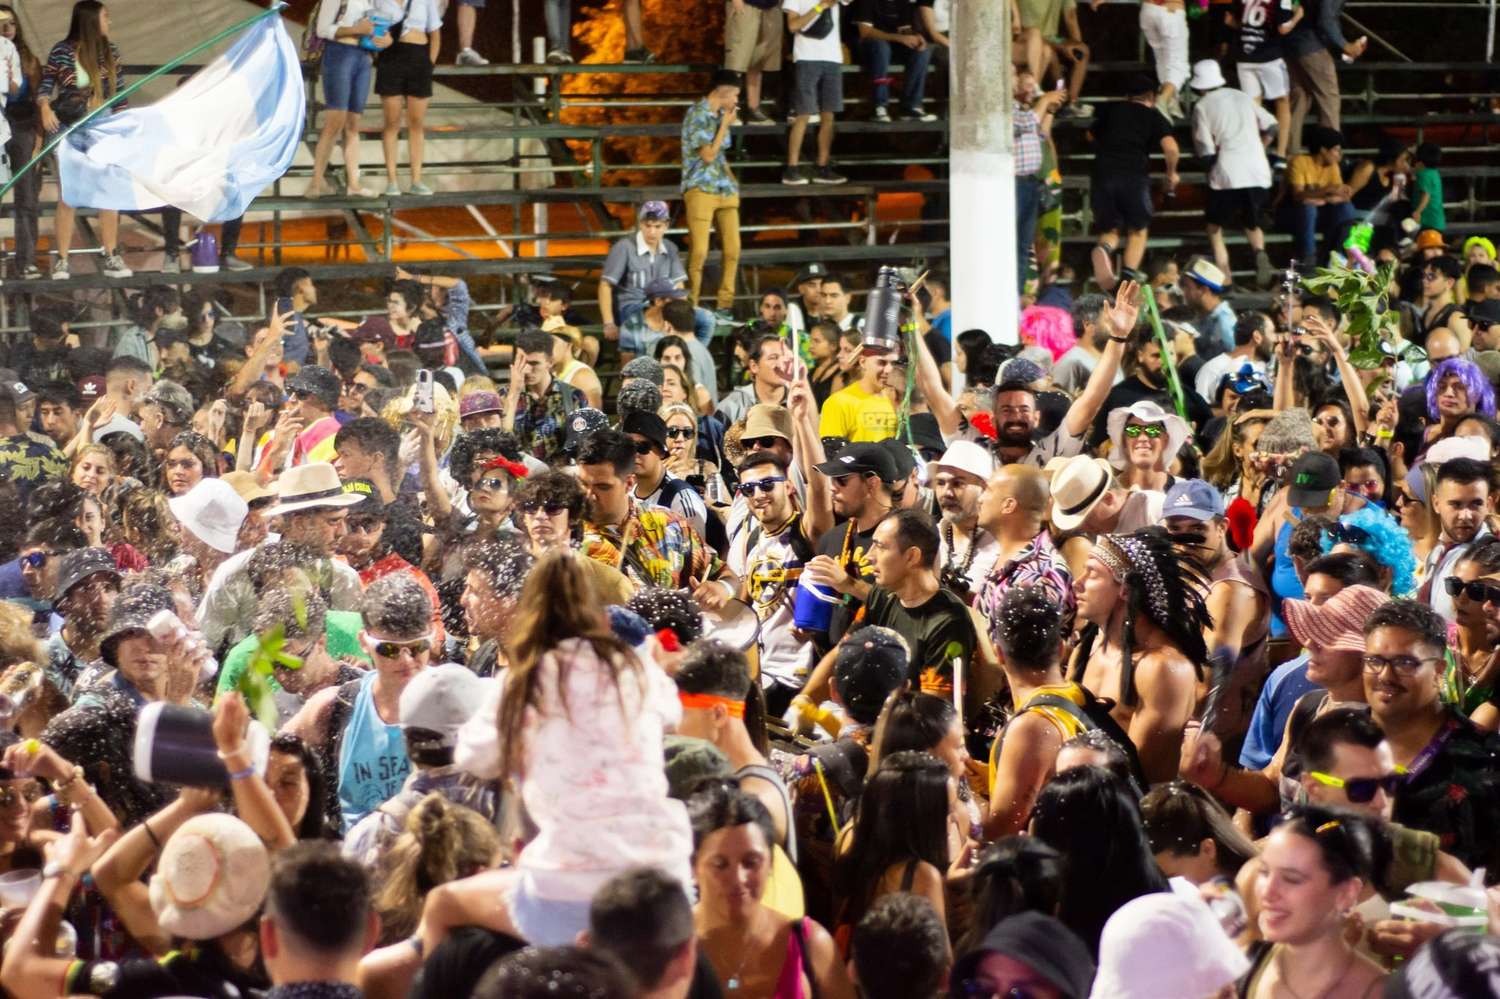 Ampliarán la seguridad en número de personal y móviles en la segunda noche de carnaval